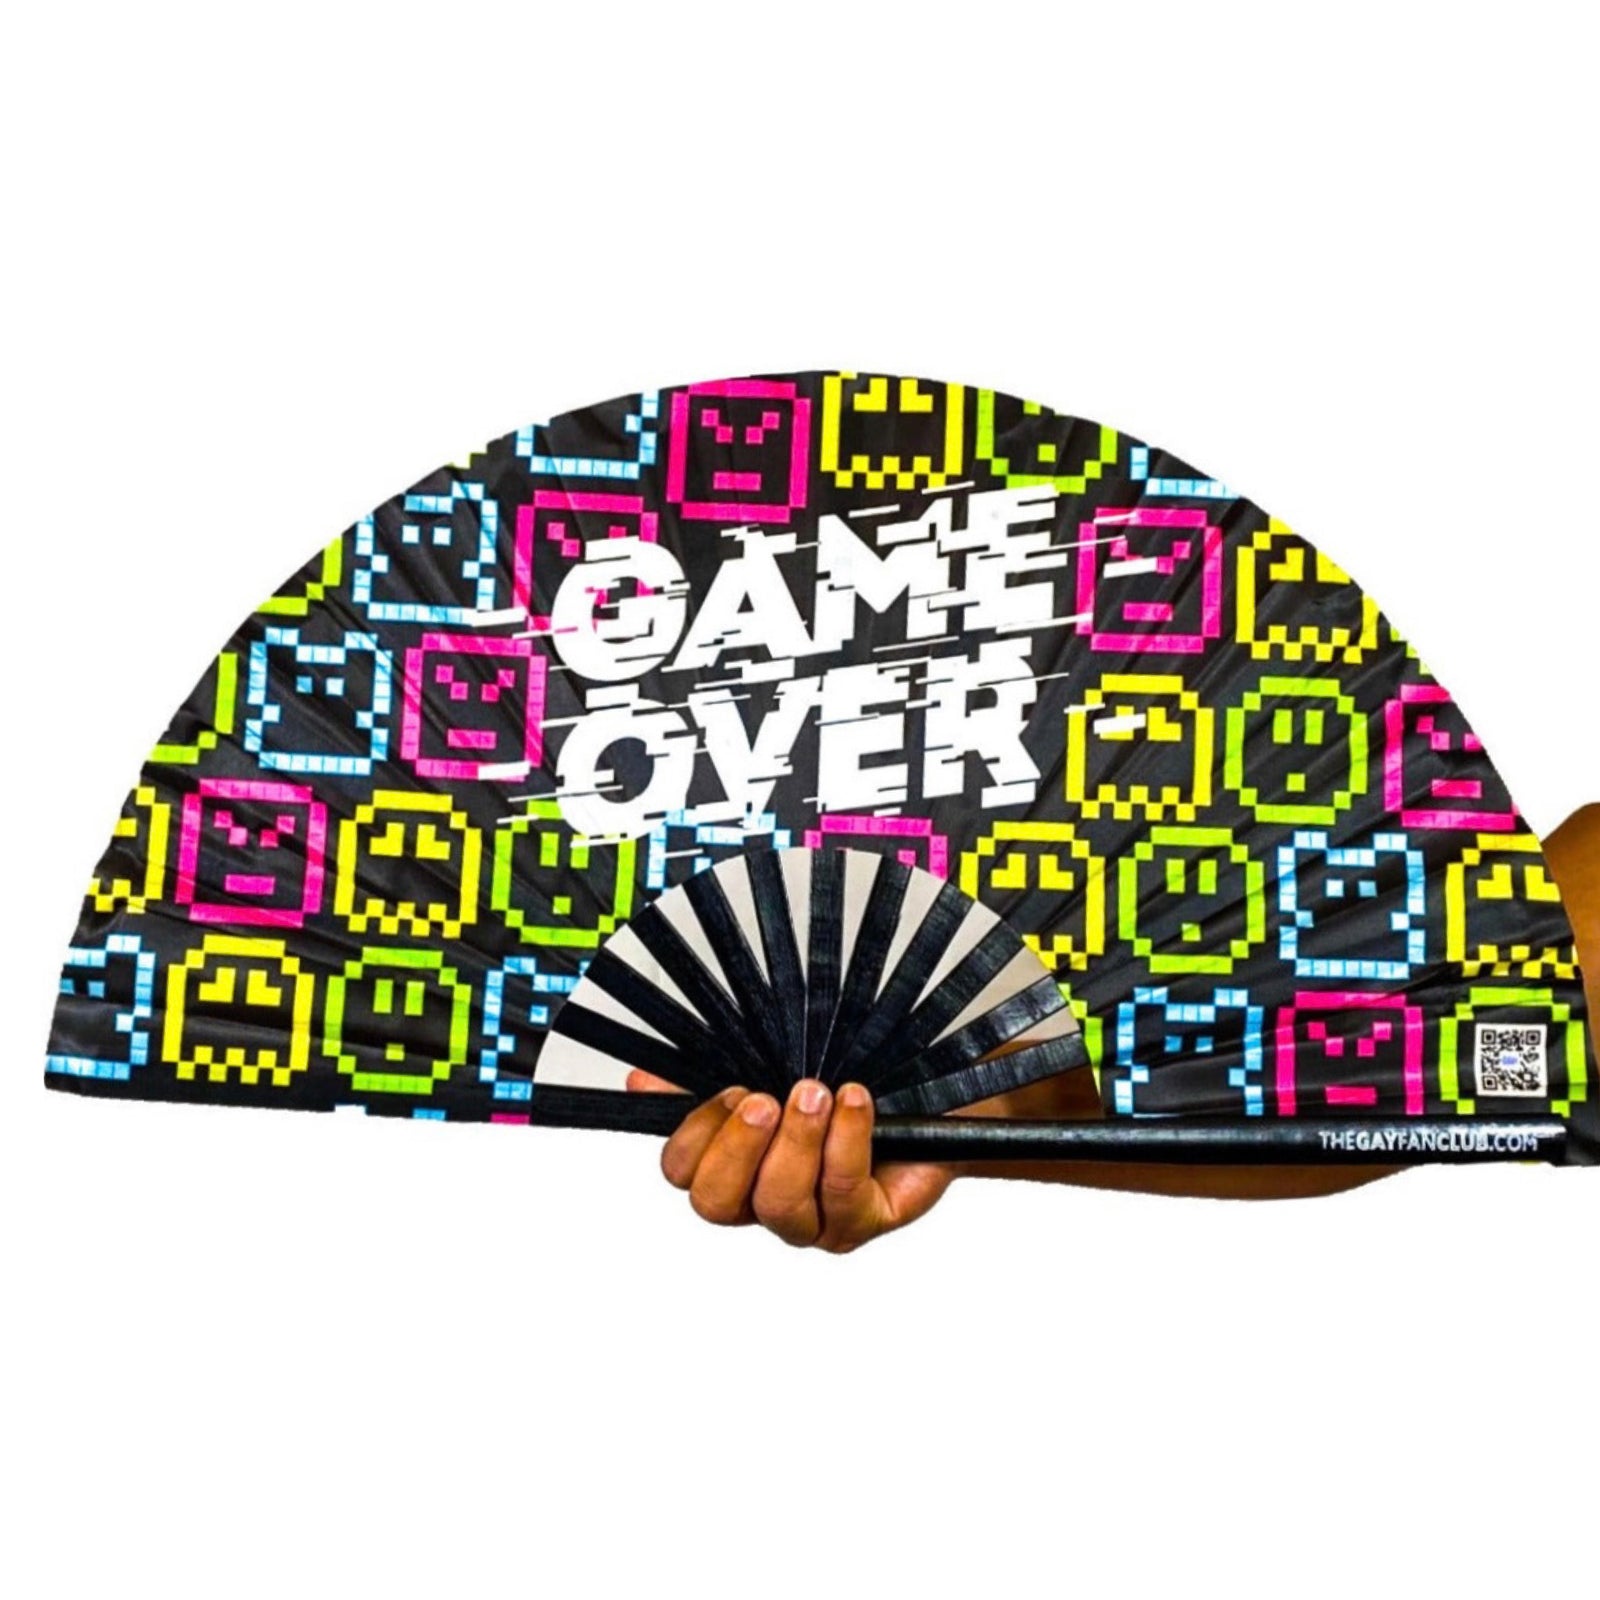 Game Over Fan - Rave Hand Fan - The Gay Fan Club